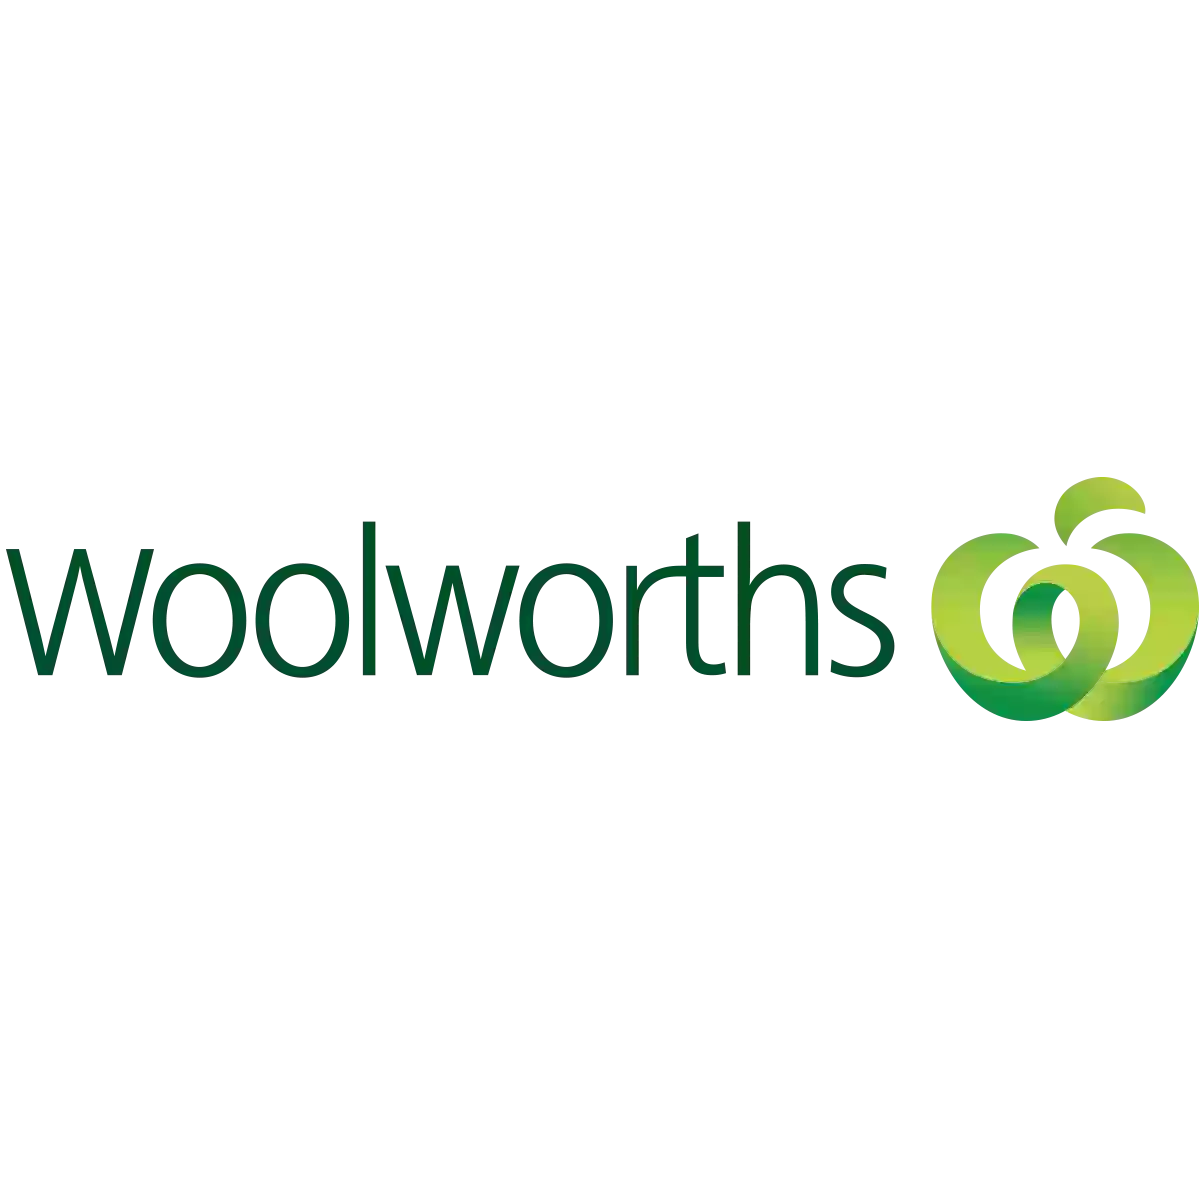 Woolworths Gateways